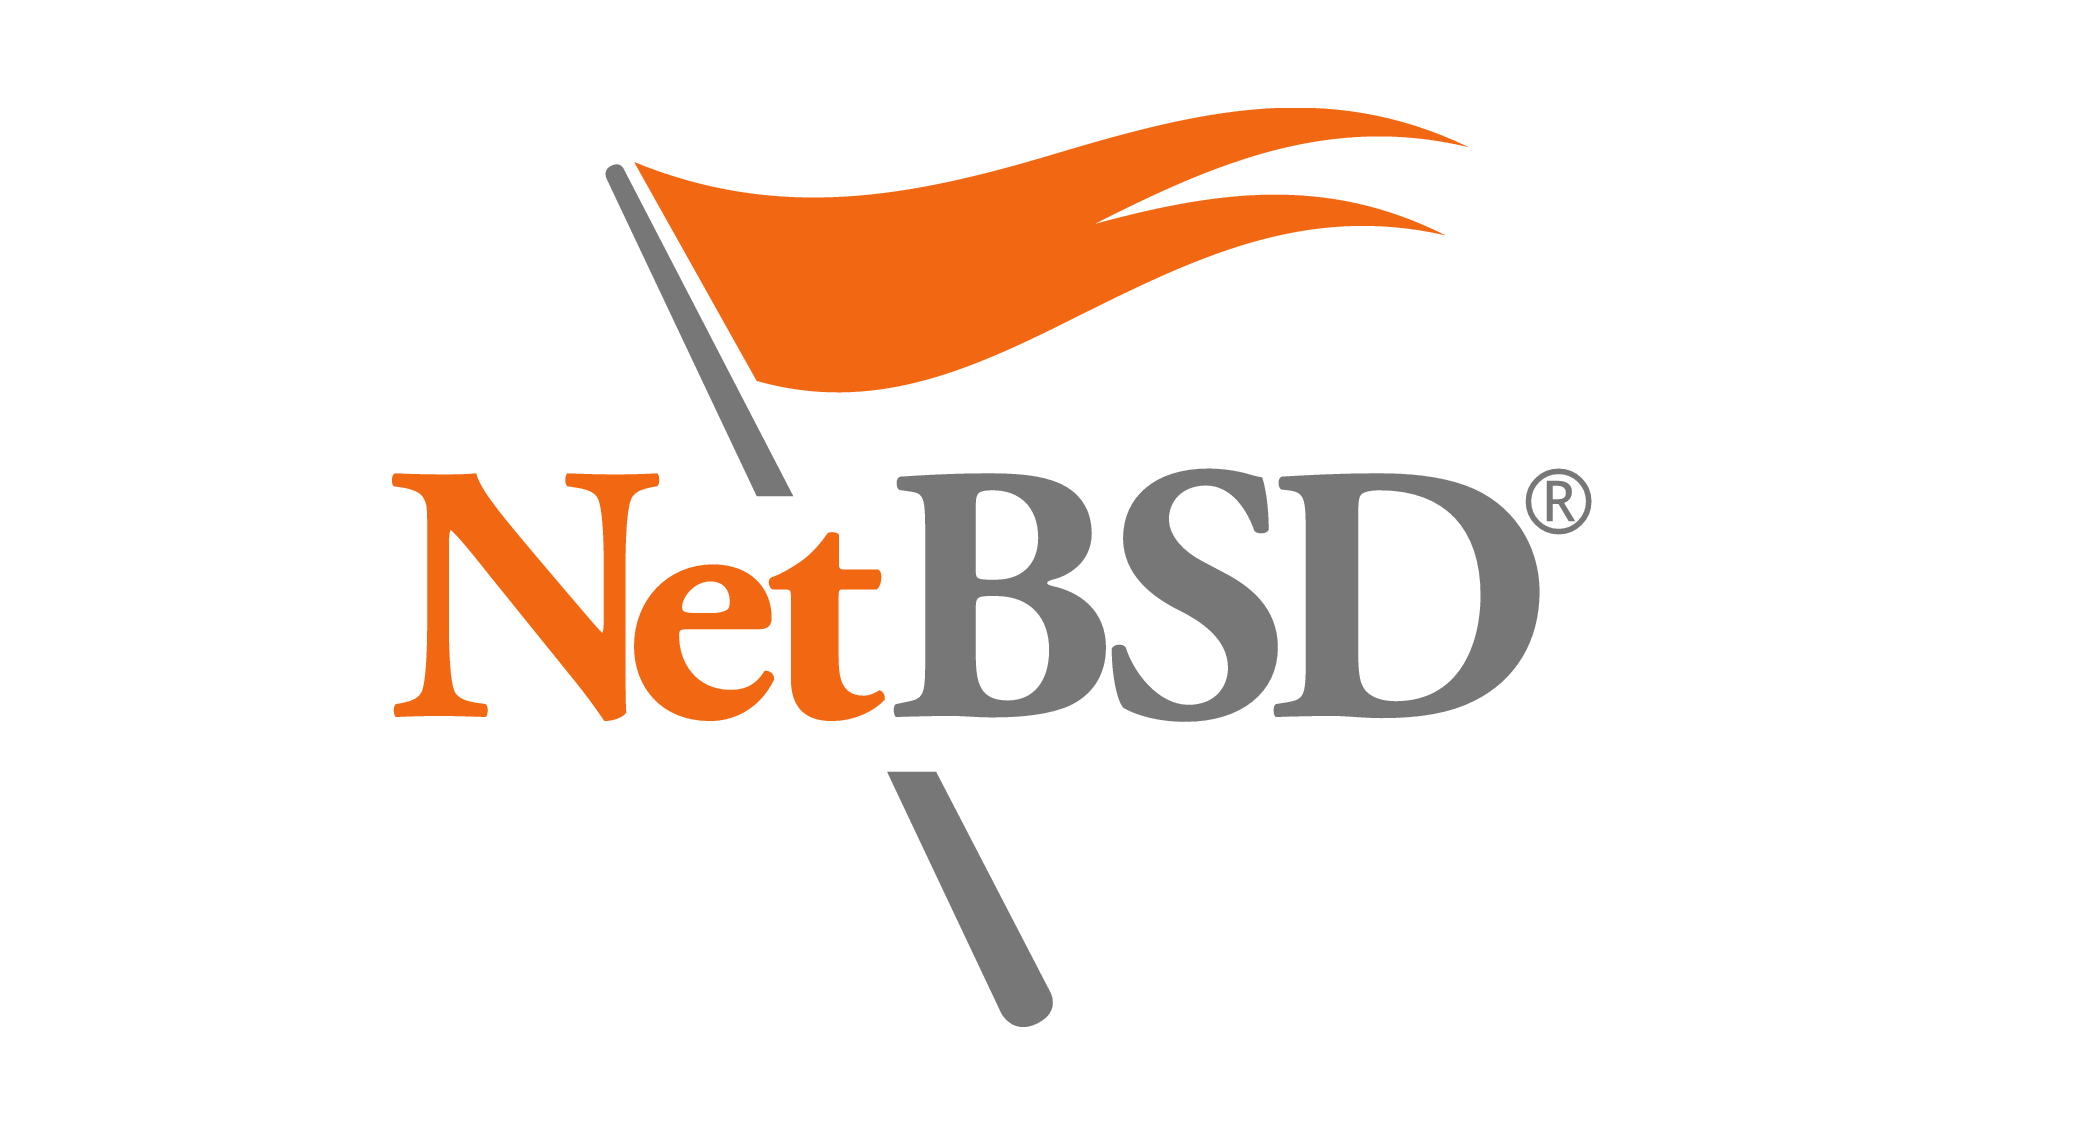 NetBSD 7.2 dolazi s poboljšanjima sigurnosti i stabilnosti, kao i podrškom za USB 3.0